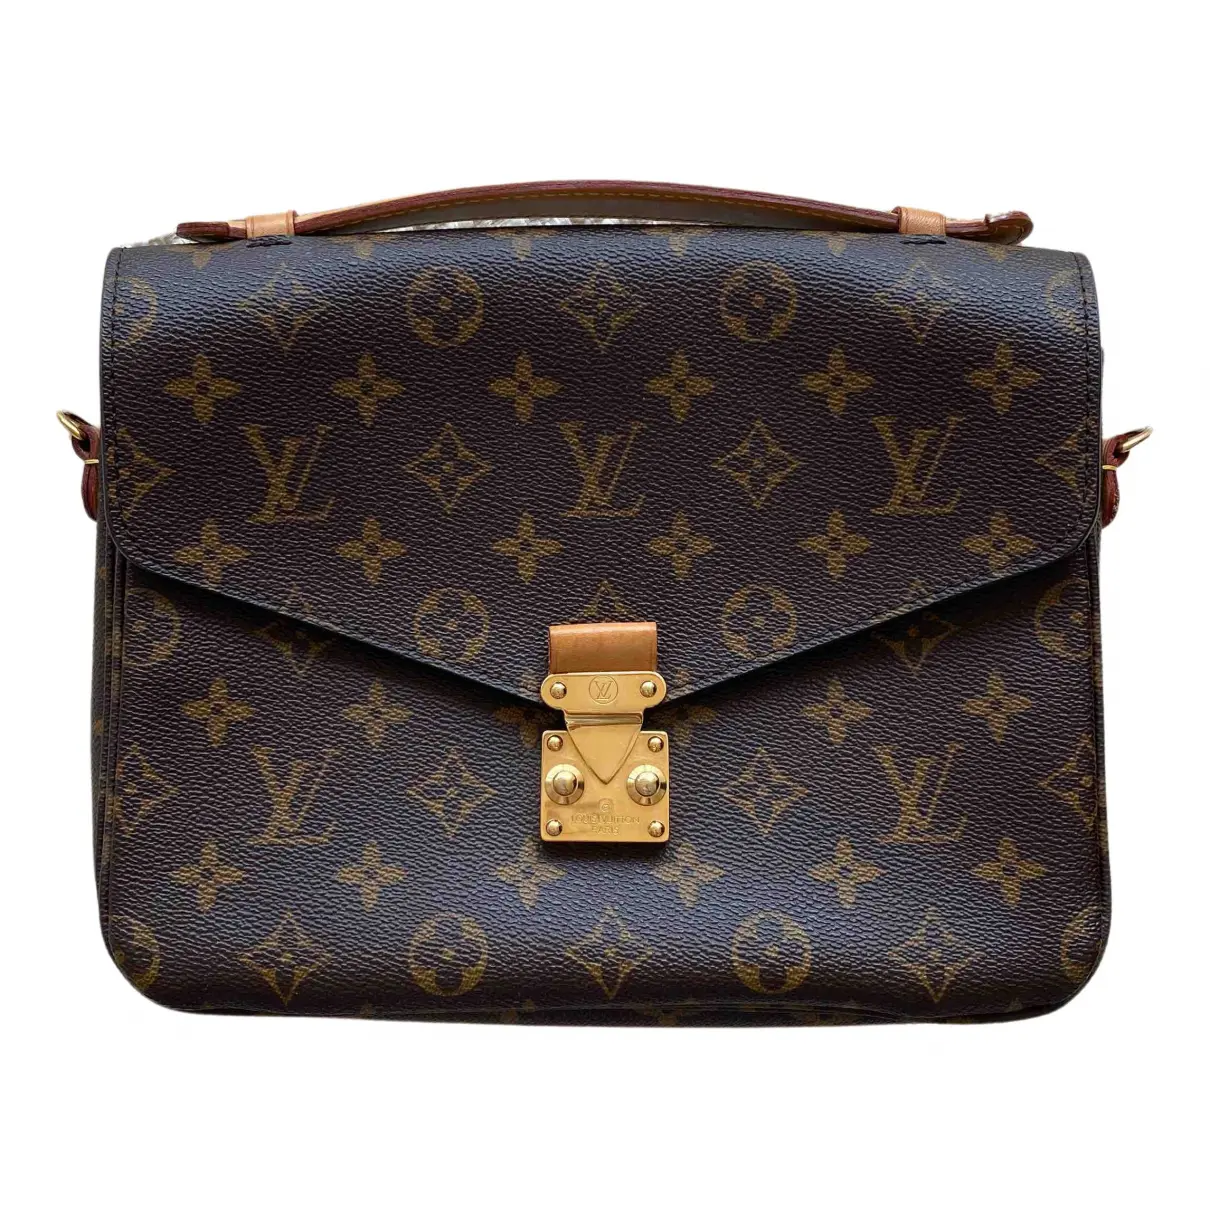 Metis leather handbag Louis Vuitton